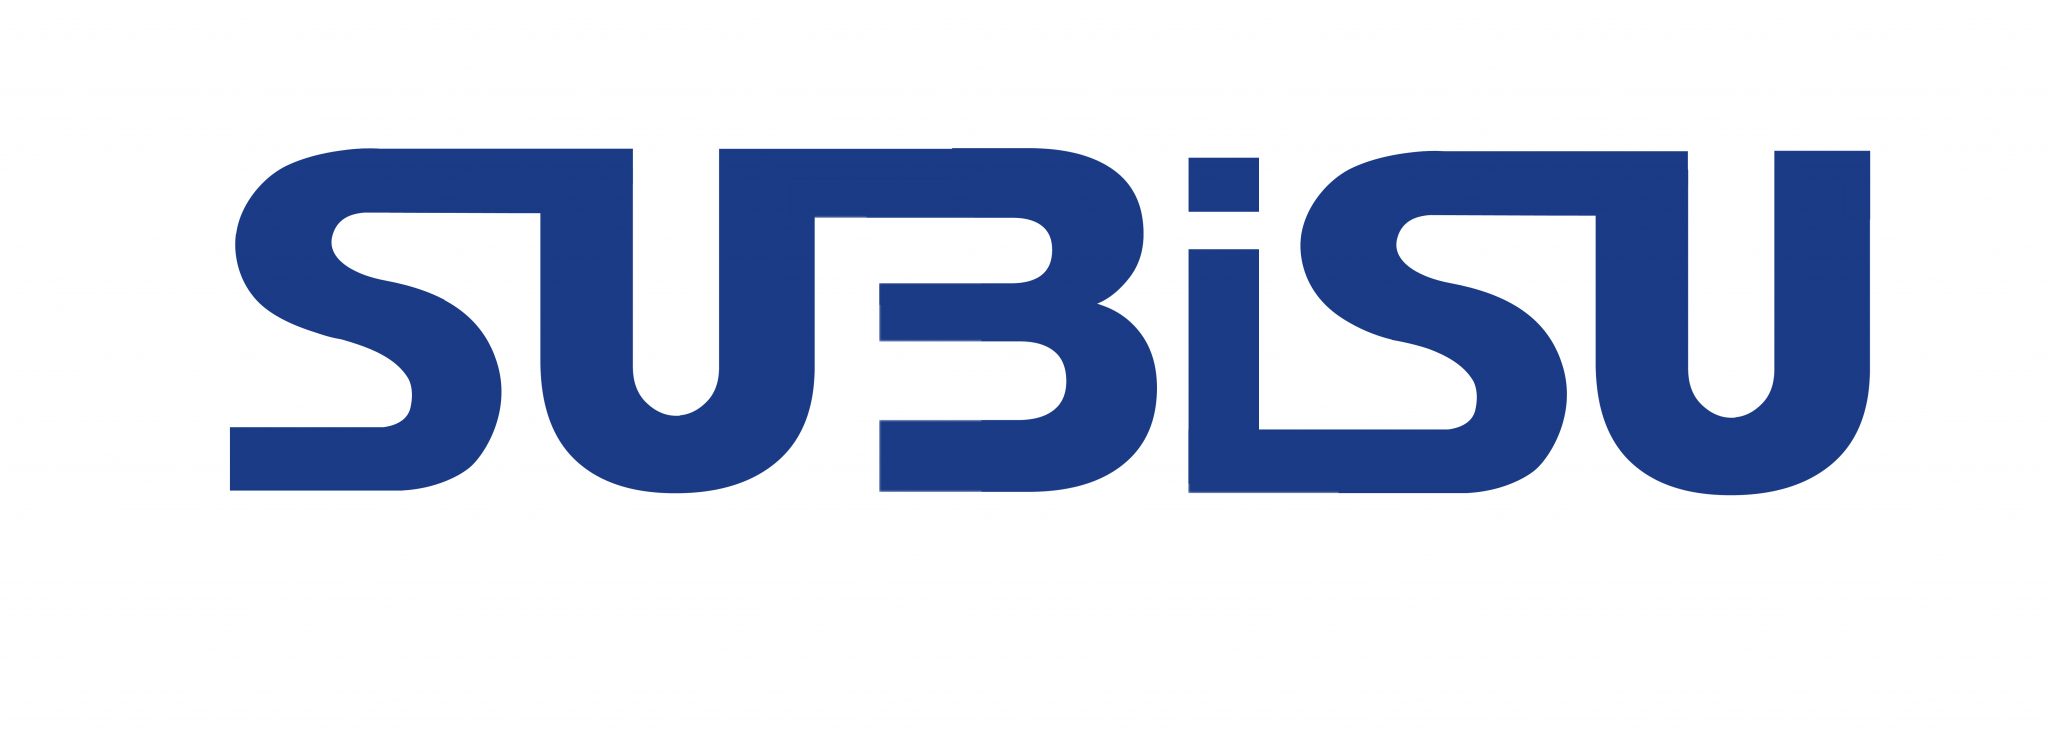 नेपालमै पहिलोपटक सुबिसुको ४०० जीबीपीएस क्षमताको सिंगल अप्टिकल फाइबर नेटवर्क